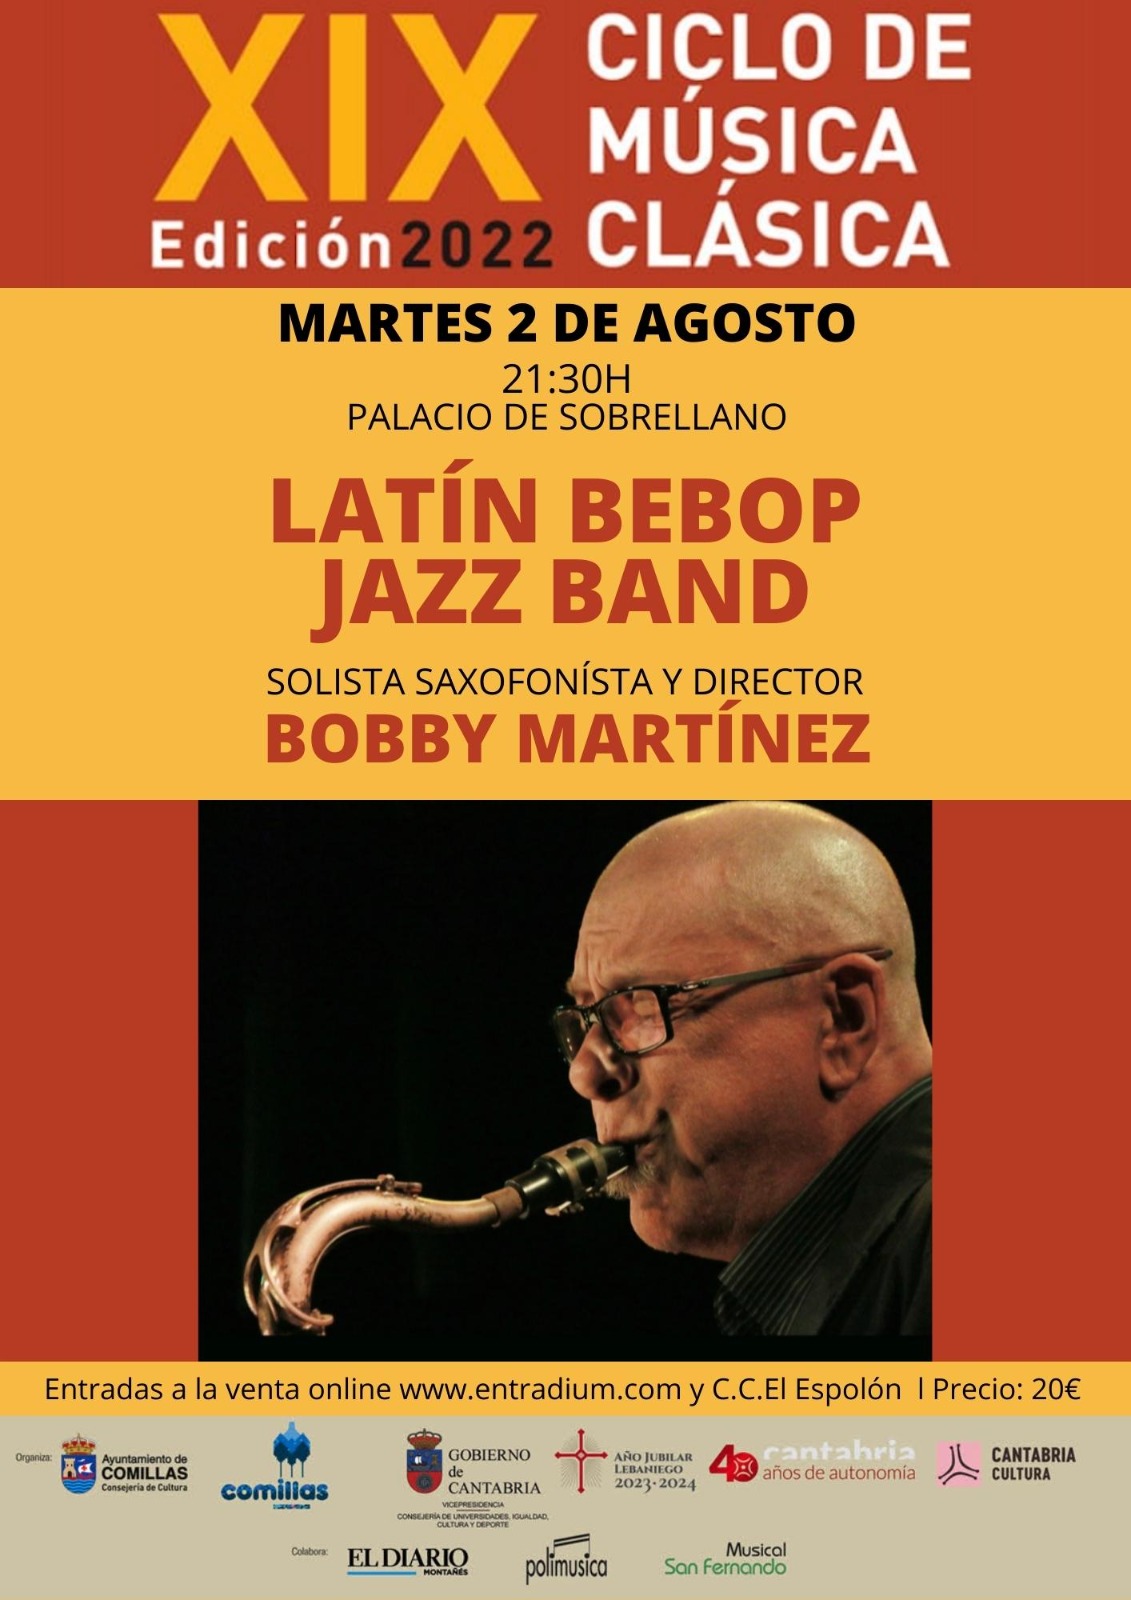 CAPRICHOS MUSICALES DE COMILLAS. Latín Bebop Jazz Band.